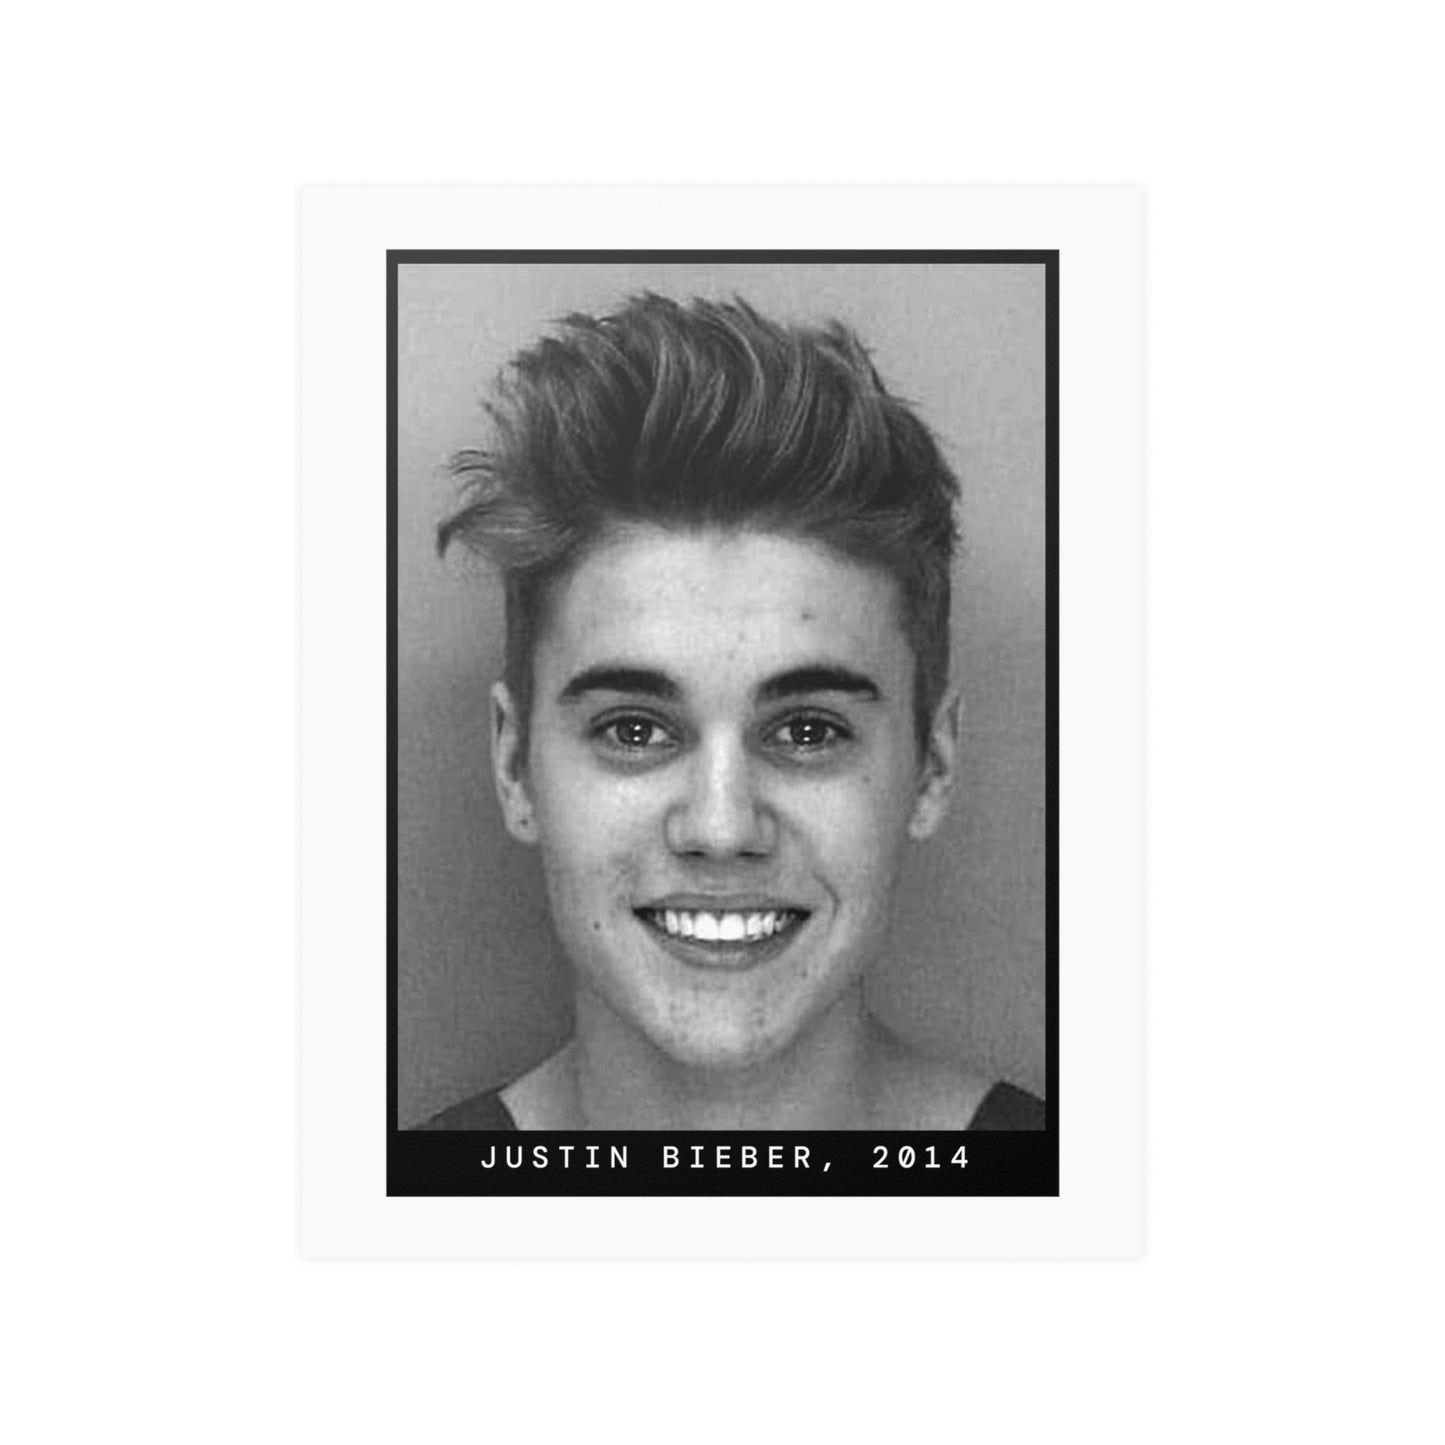 Justin Bieber, 2014 Singer Mugshot Poster